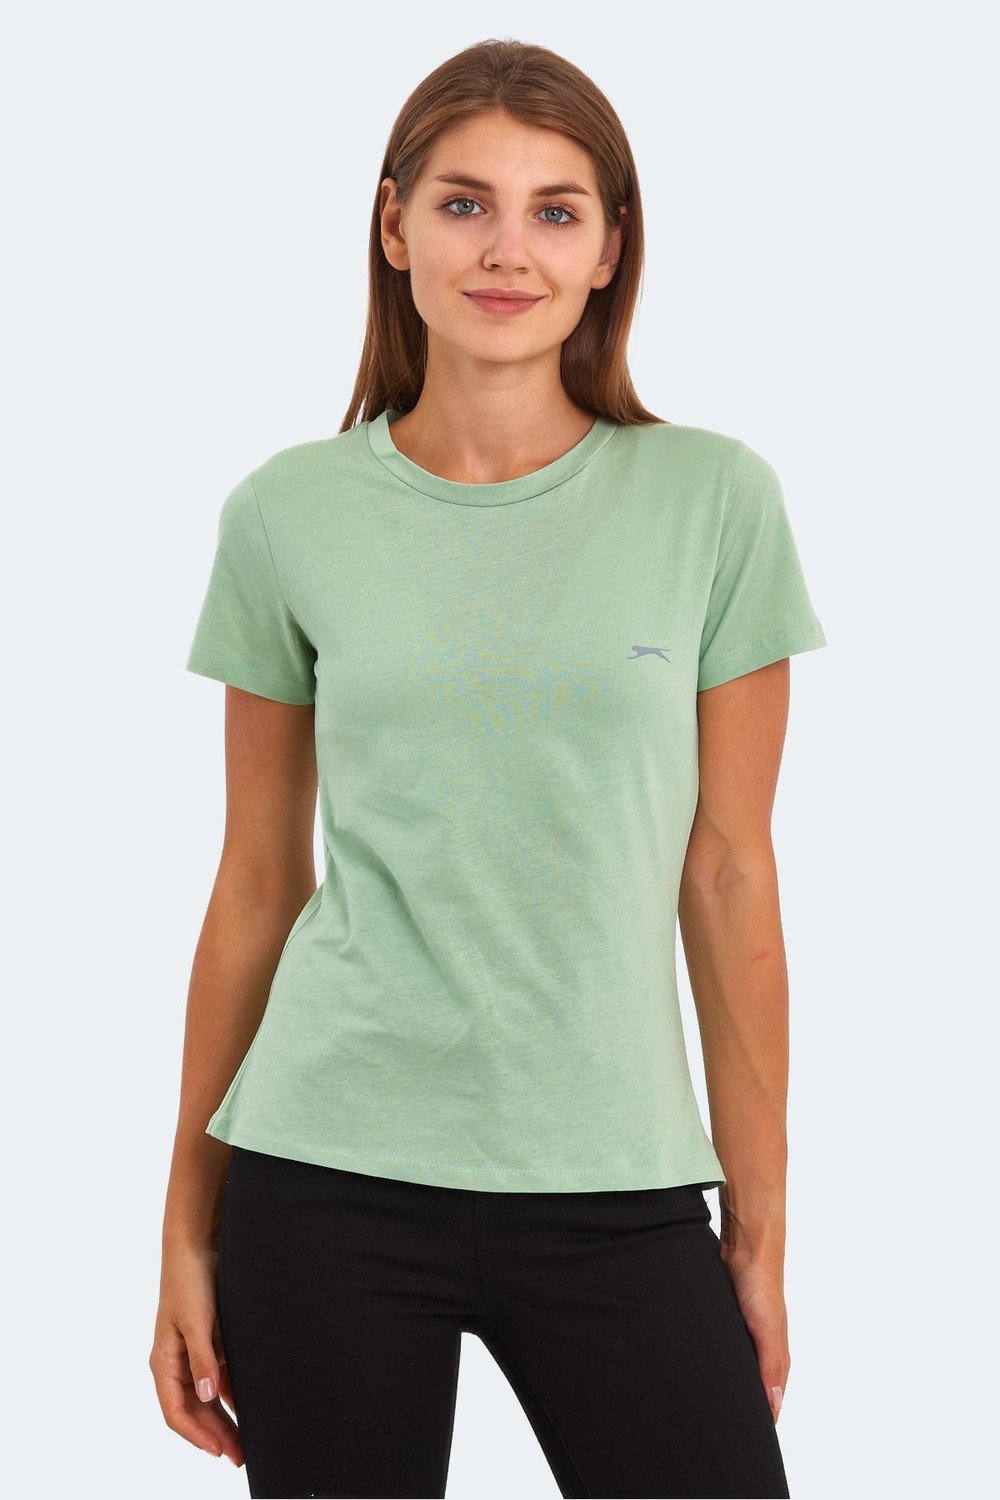 Slazenger T-Shirt - Green - Crew neck